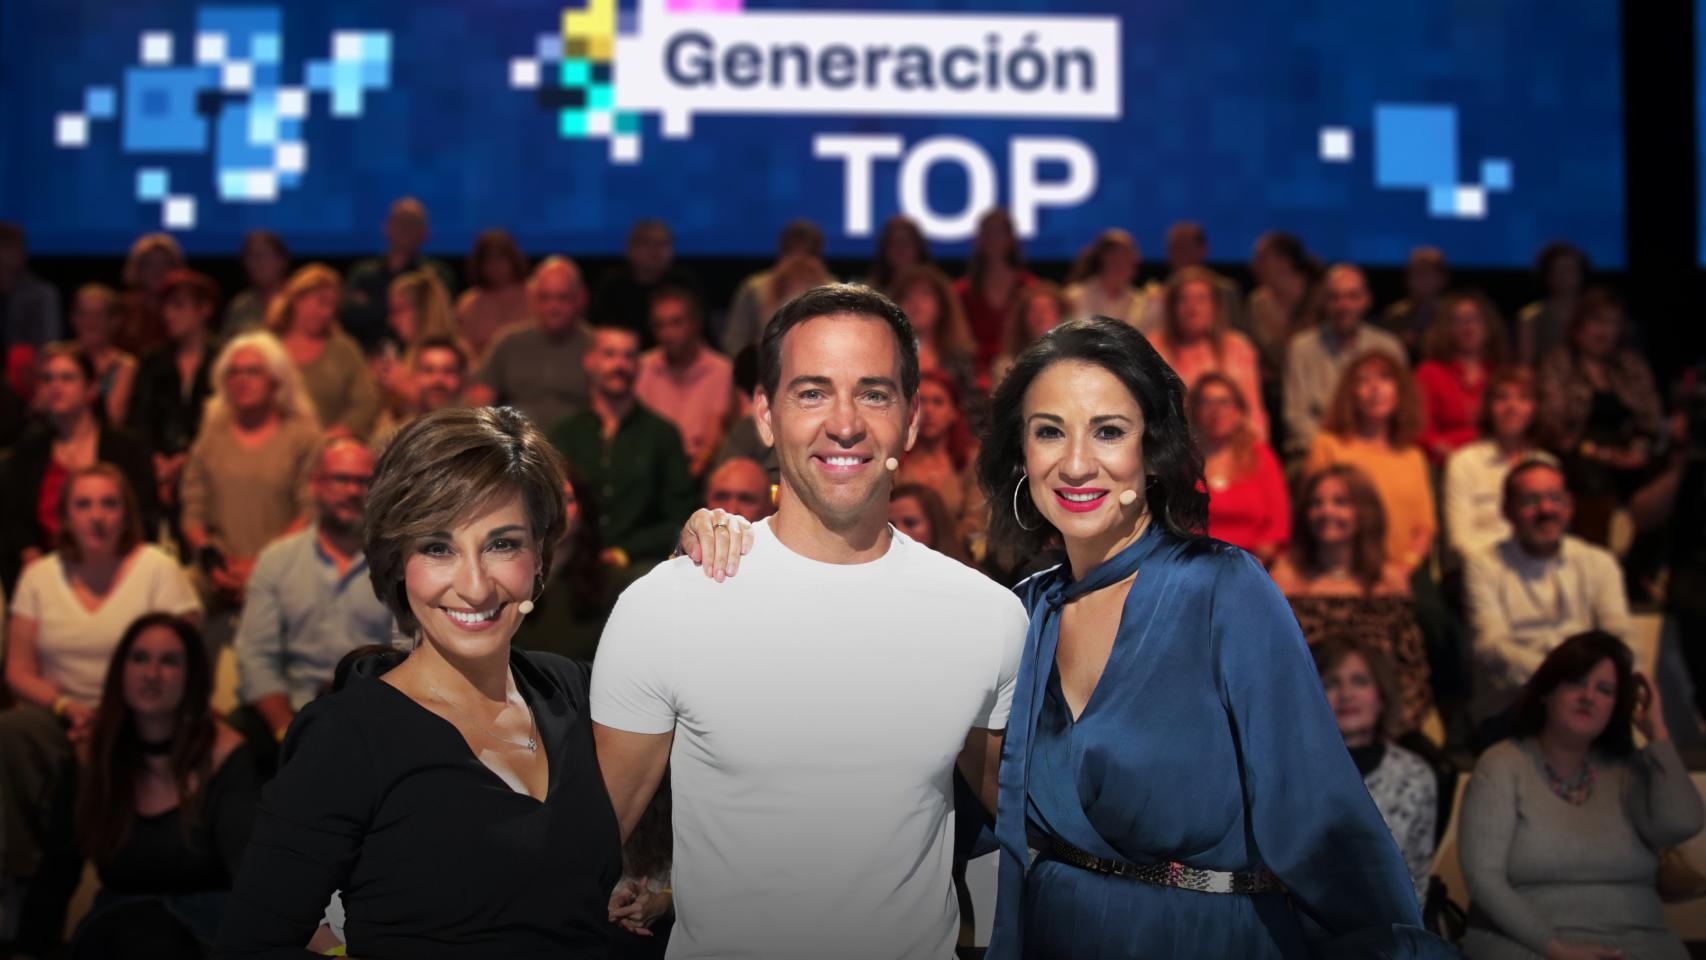 Adela González, David Meca y Silvia Jato, concursantes de la generación 'Guay' en el programa 'Generación TOP'.